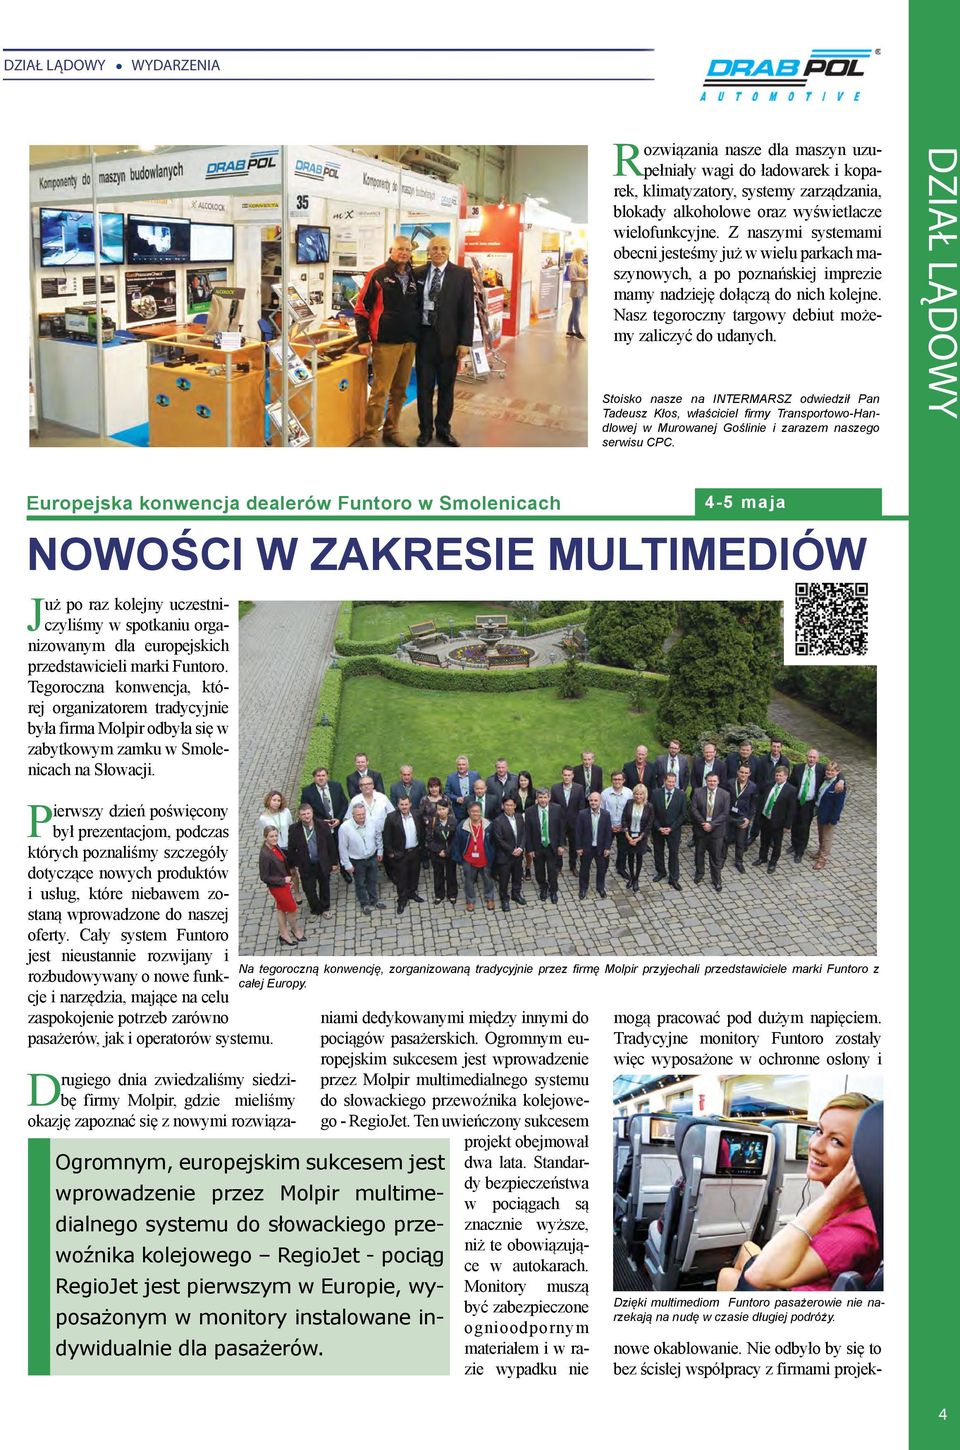 Stoisko nasze na INTERMARSZ odwiedził Pan Tadeusz Kłos, właściciel firmy Transportowo-Handlowej w Murowanej Goślinie i zarazem naszego serwisu CPC.